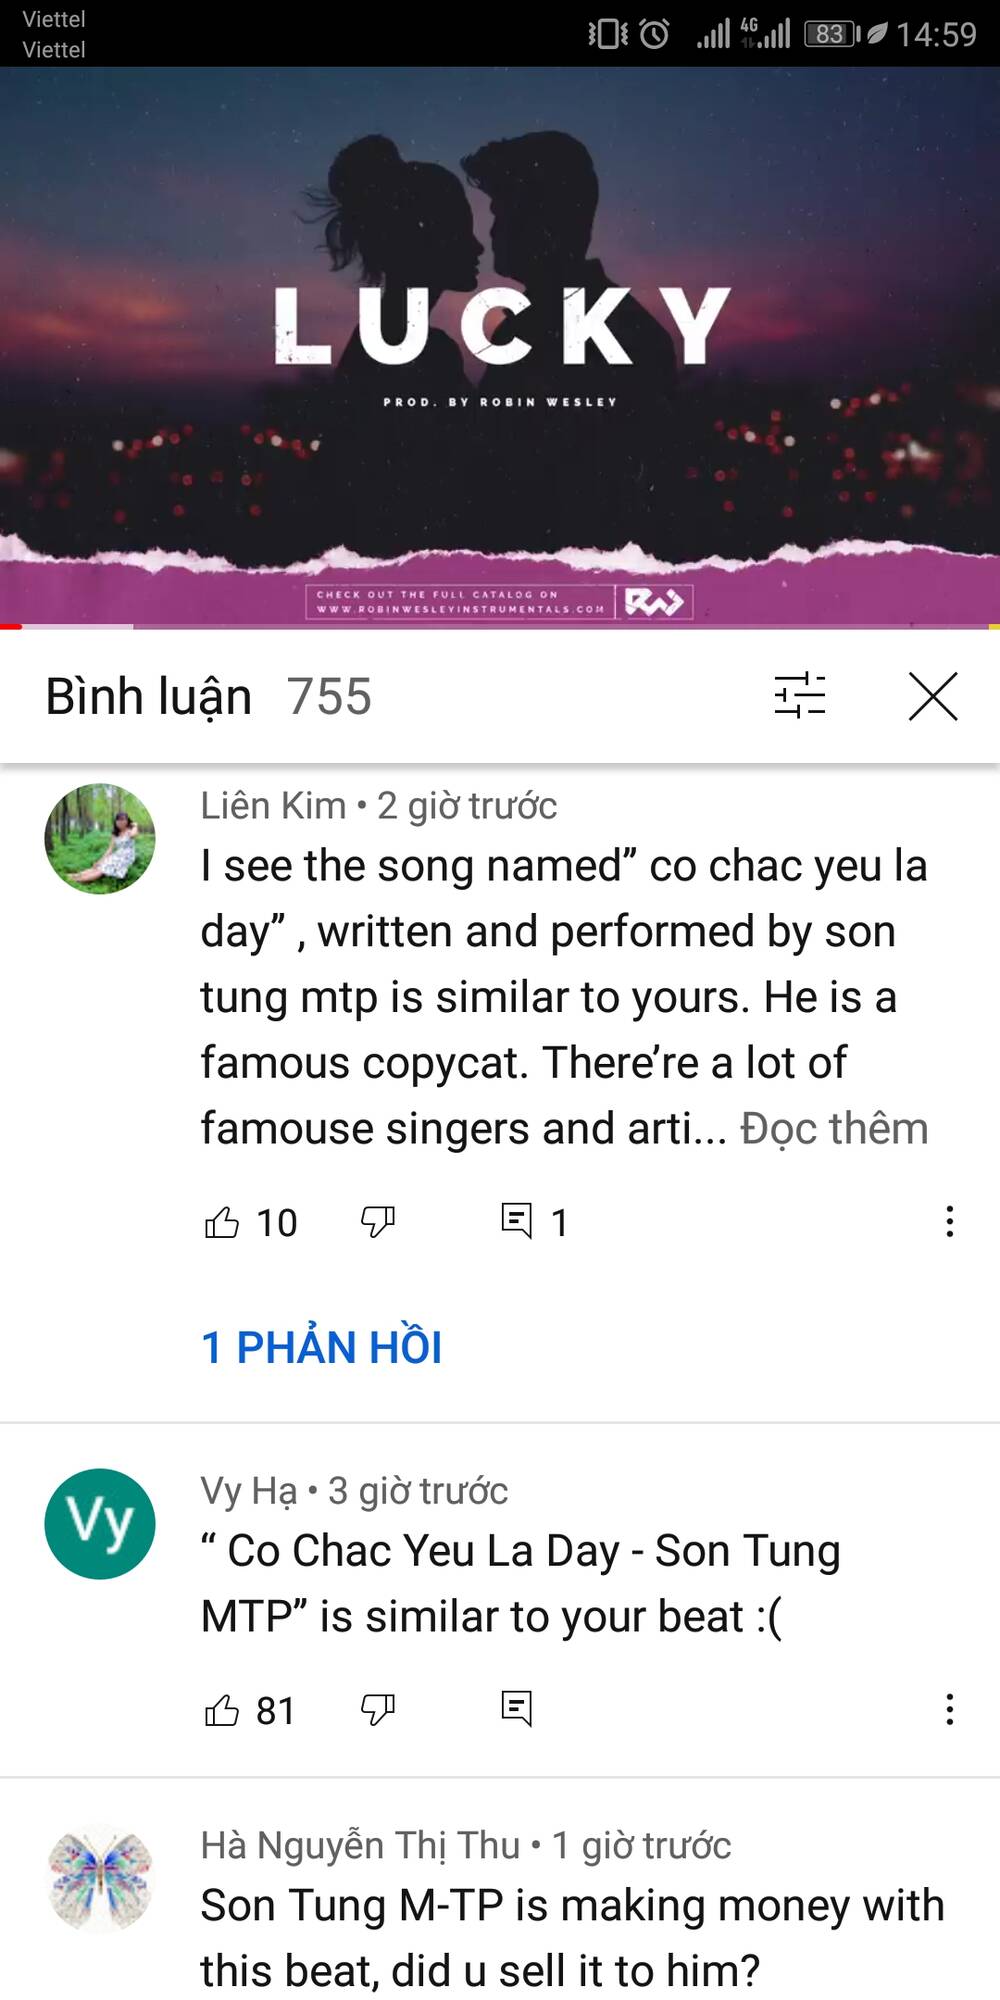 Cộng đồng mạng cảm thấy buồn khi Sơn Tùng M-TP liên tục đạo nhạc (Nguồn: Internet)